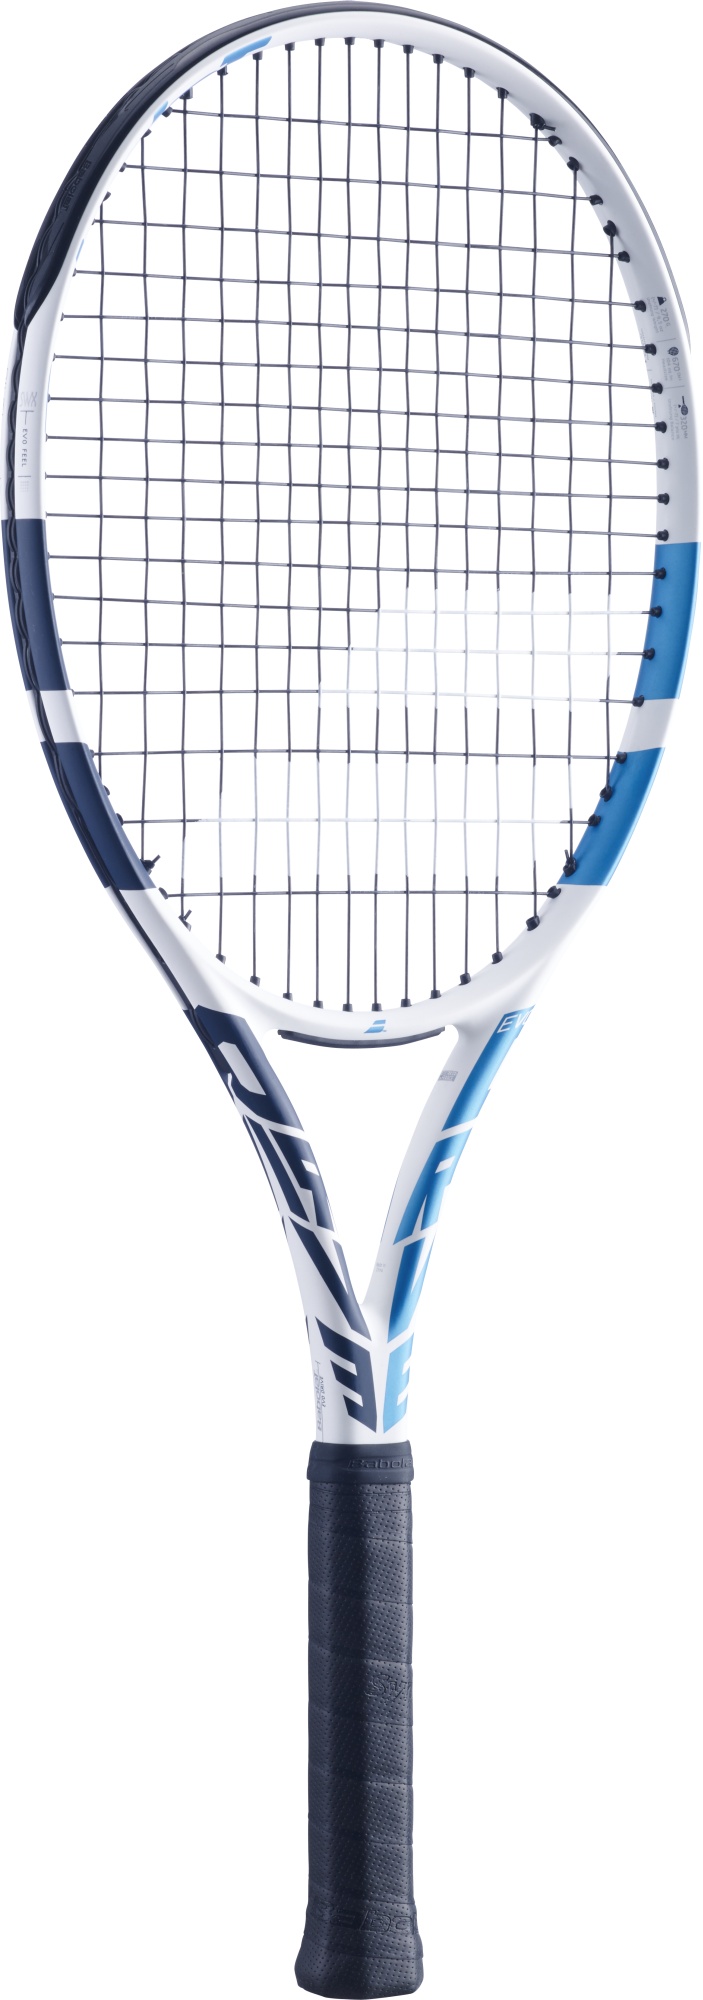 Women's tennis racket